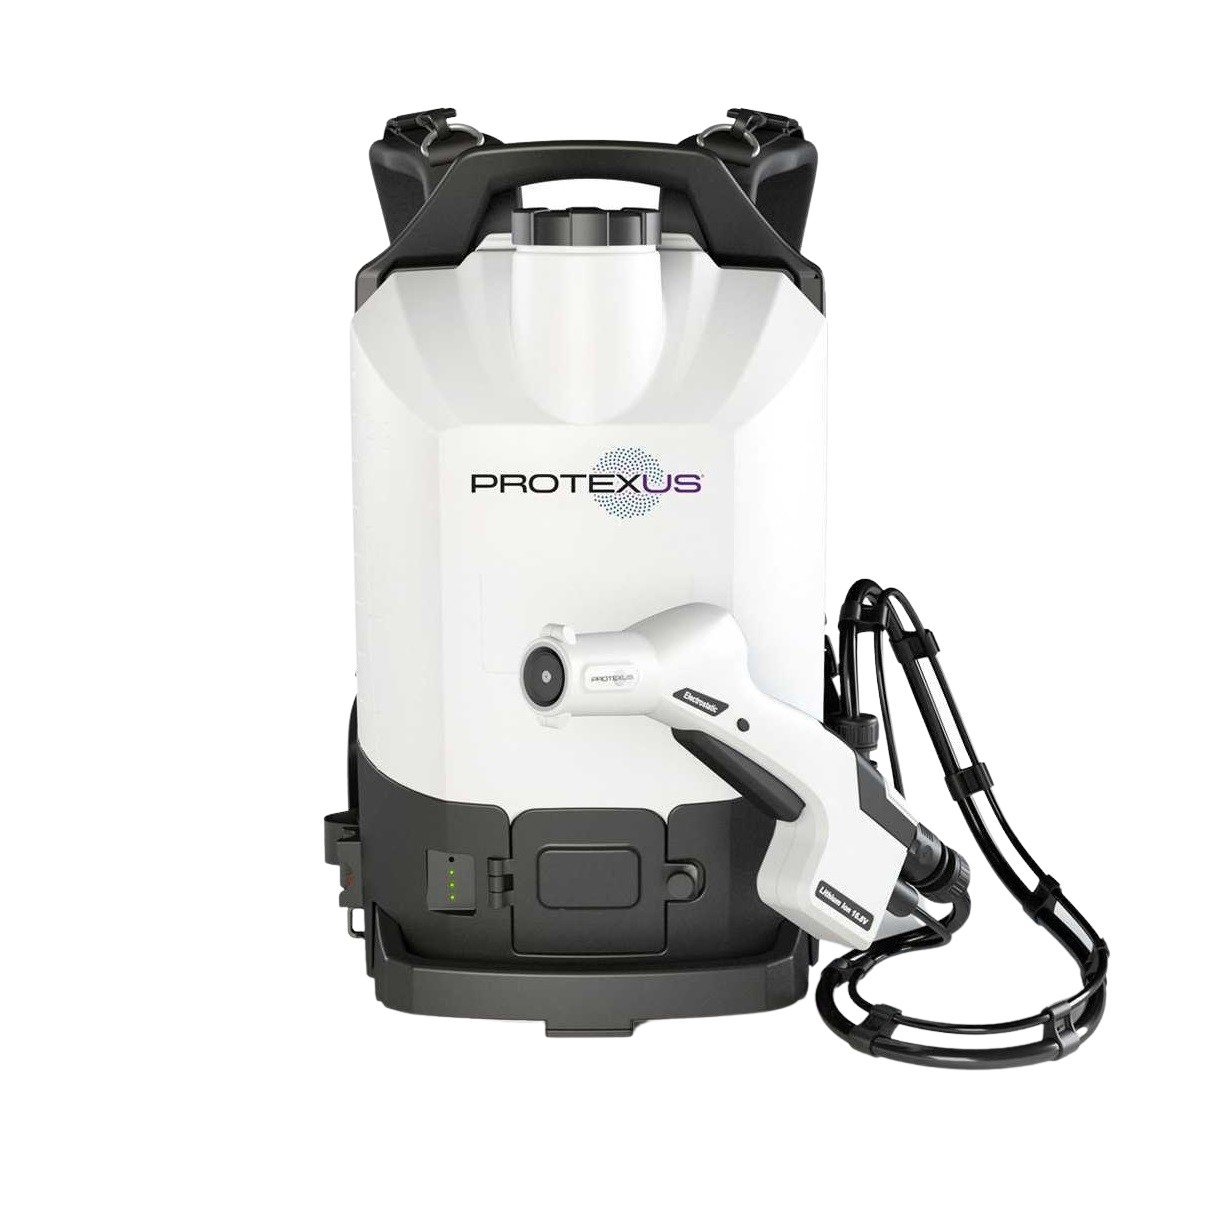 Protexus elektrostatisk sprayer - Backpack